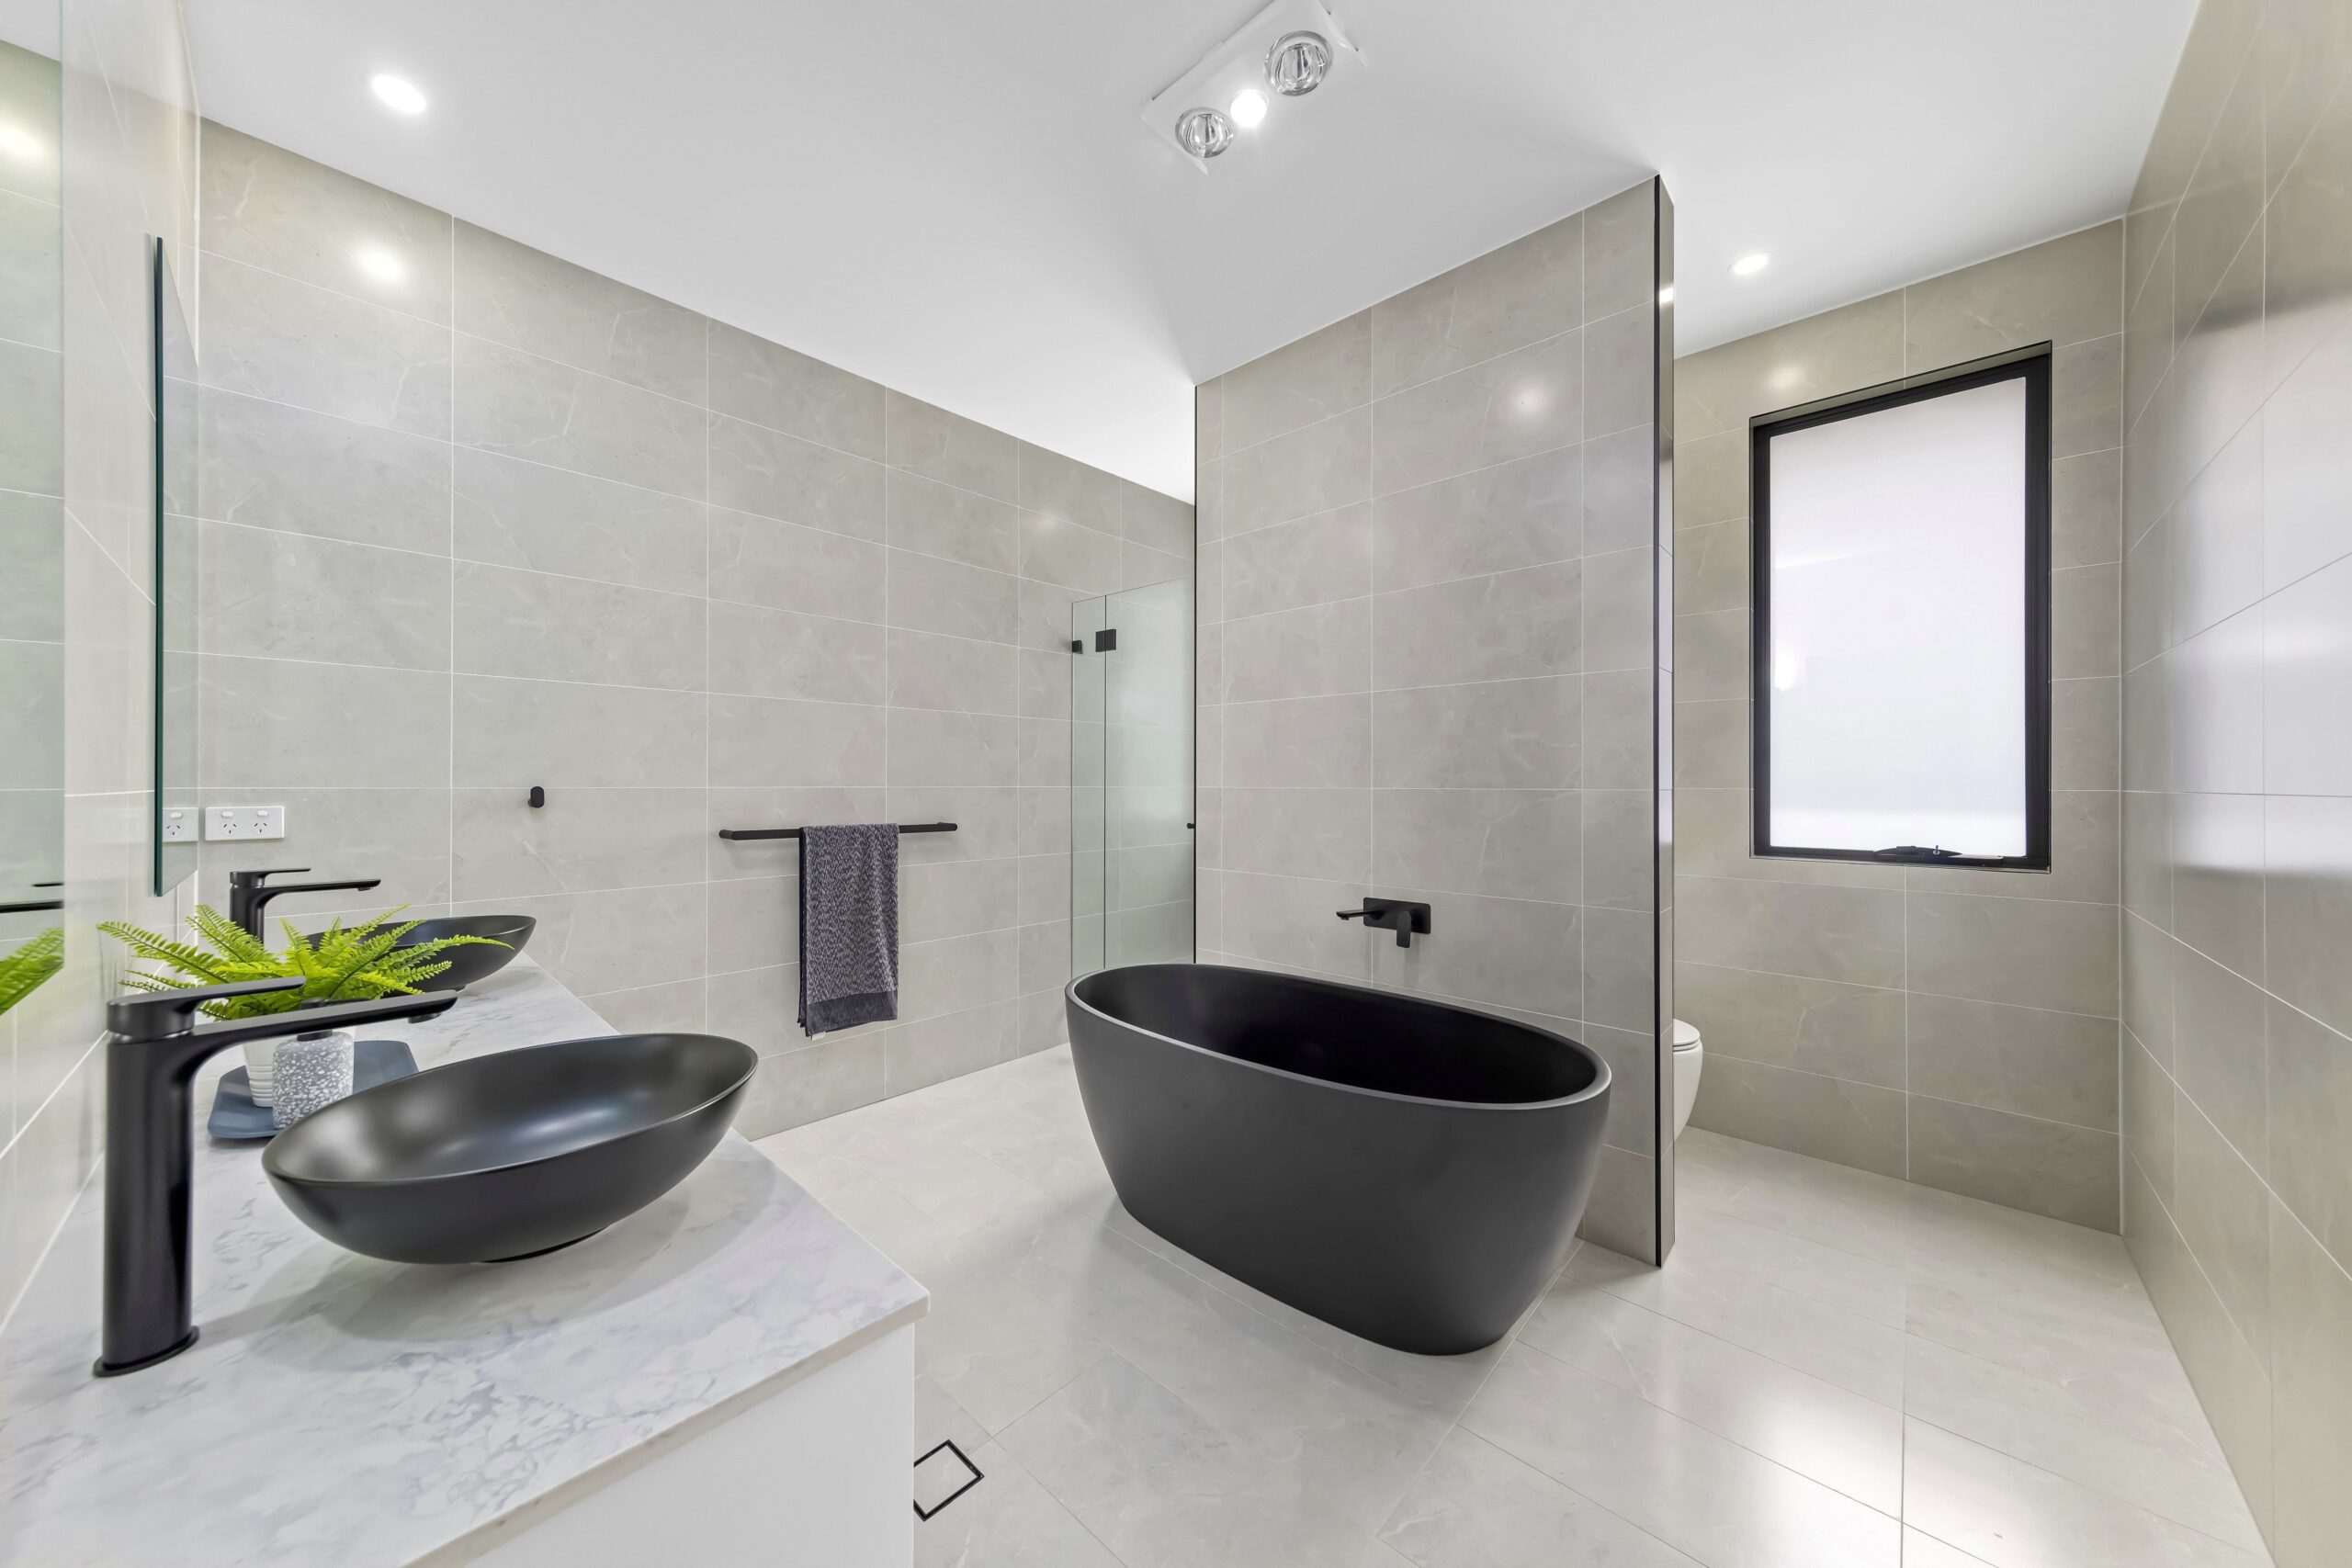 Luxury home bathroom with black tub sink and bathtub